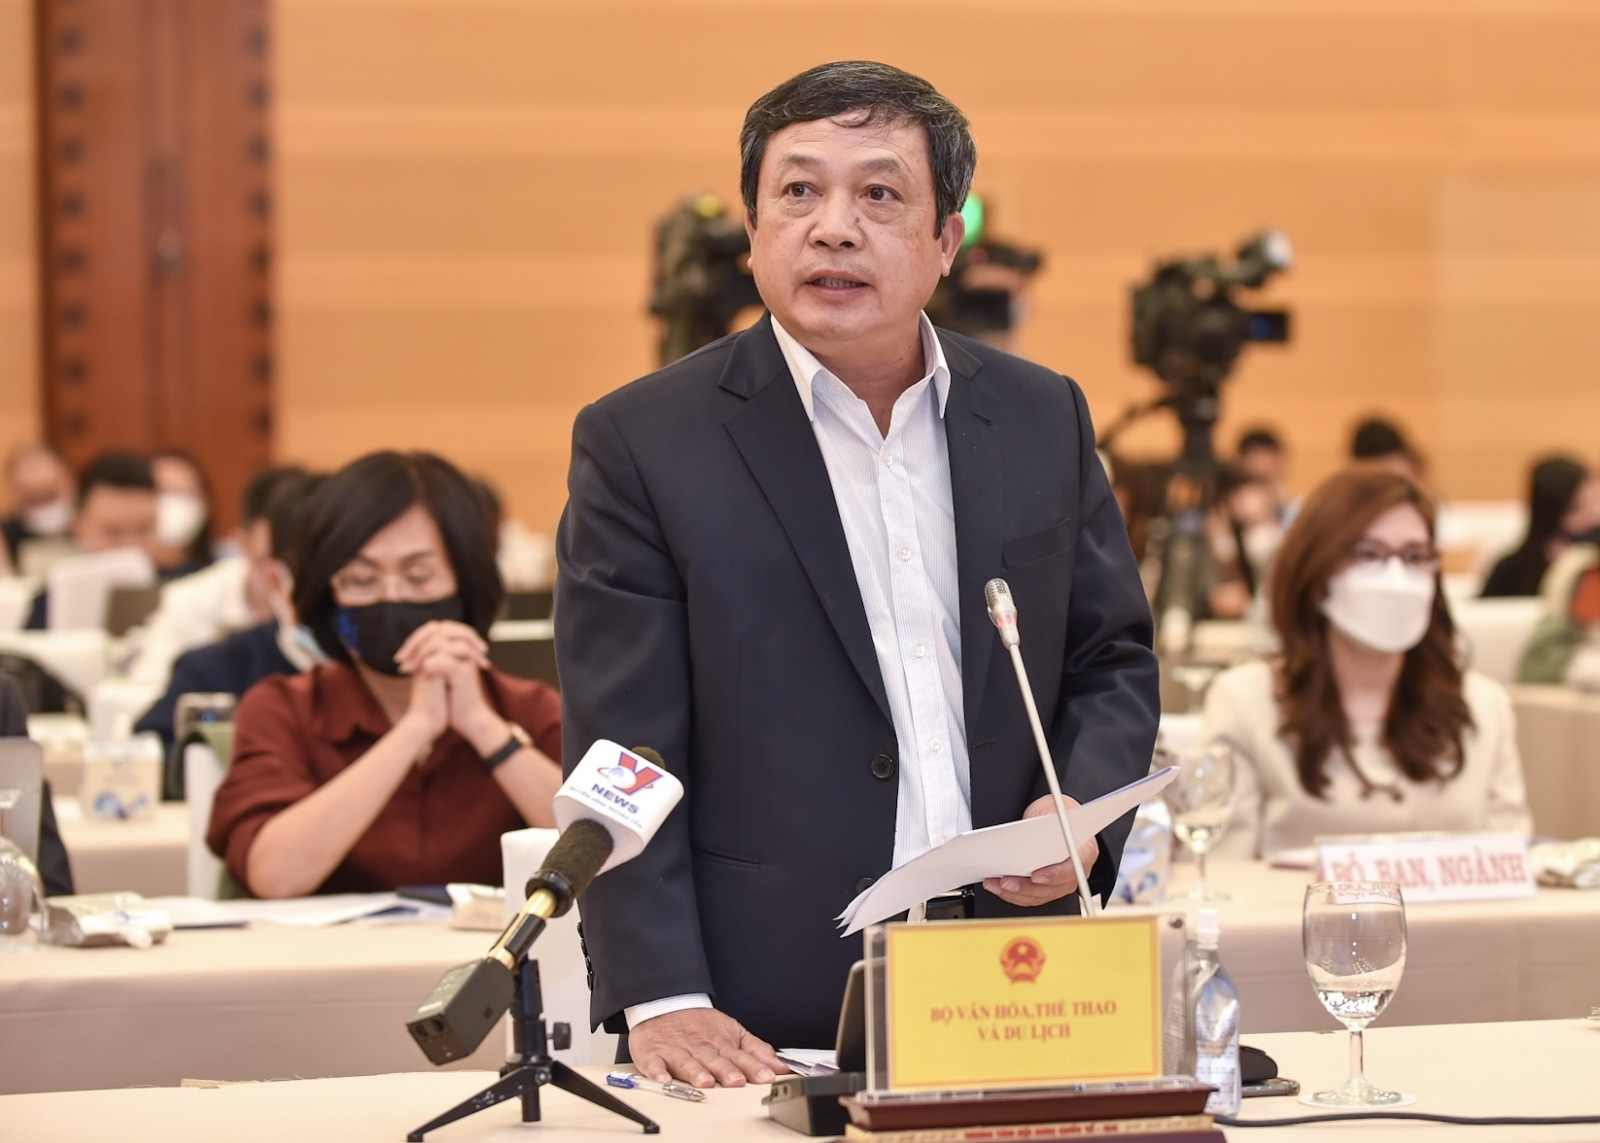 Thứ trưởng Đoàn Văn Việt: Đẩy mạnh công tác xúc tiến, quảng bá đến các thị trường du lịch trọng điểm